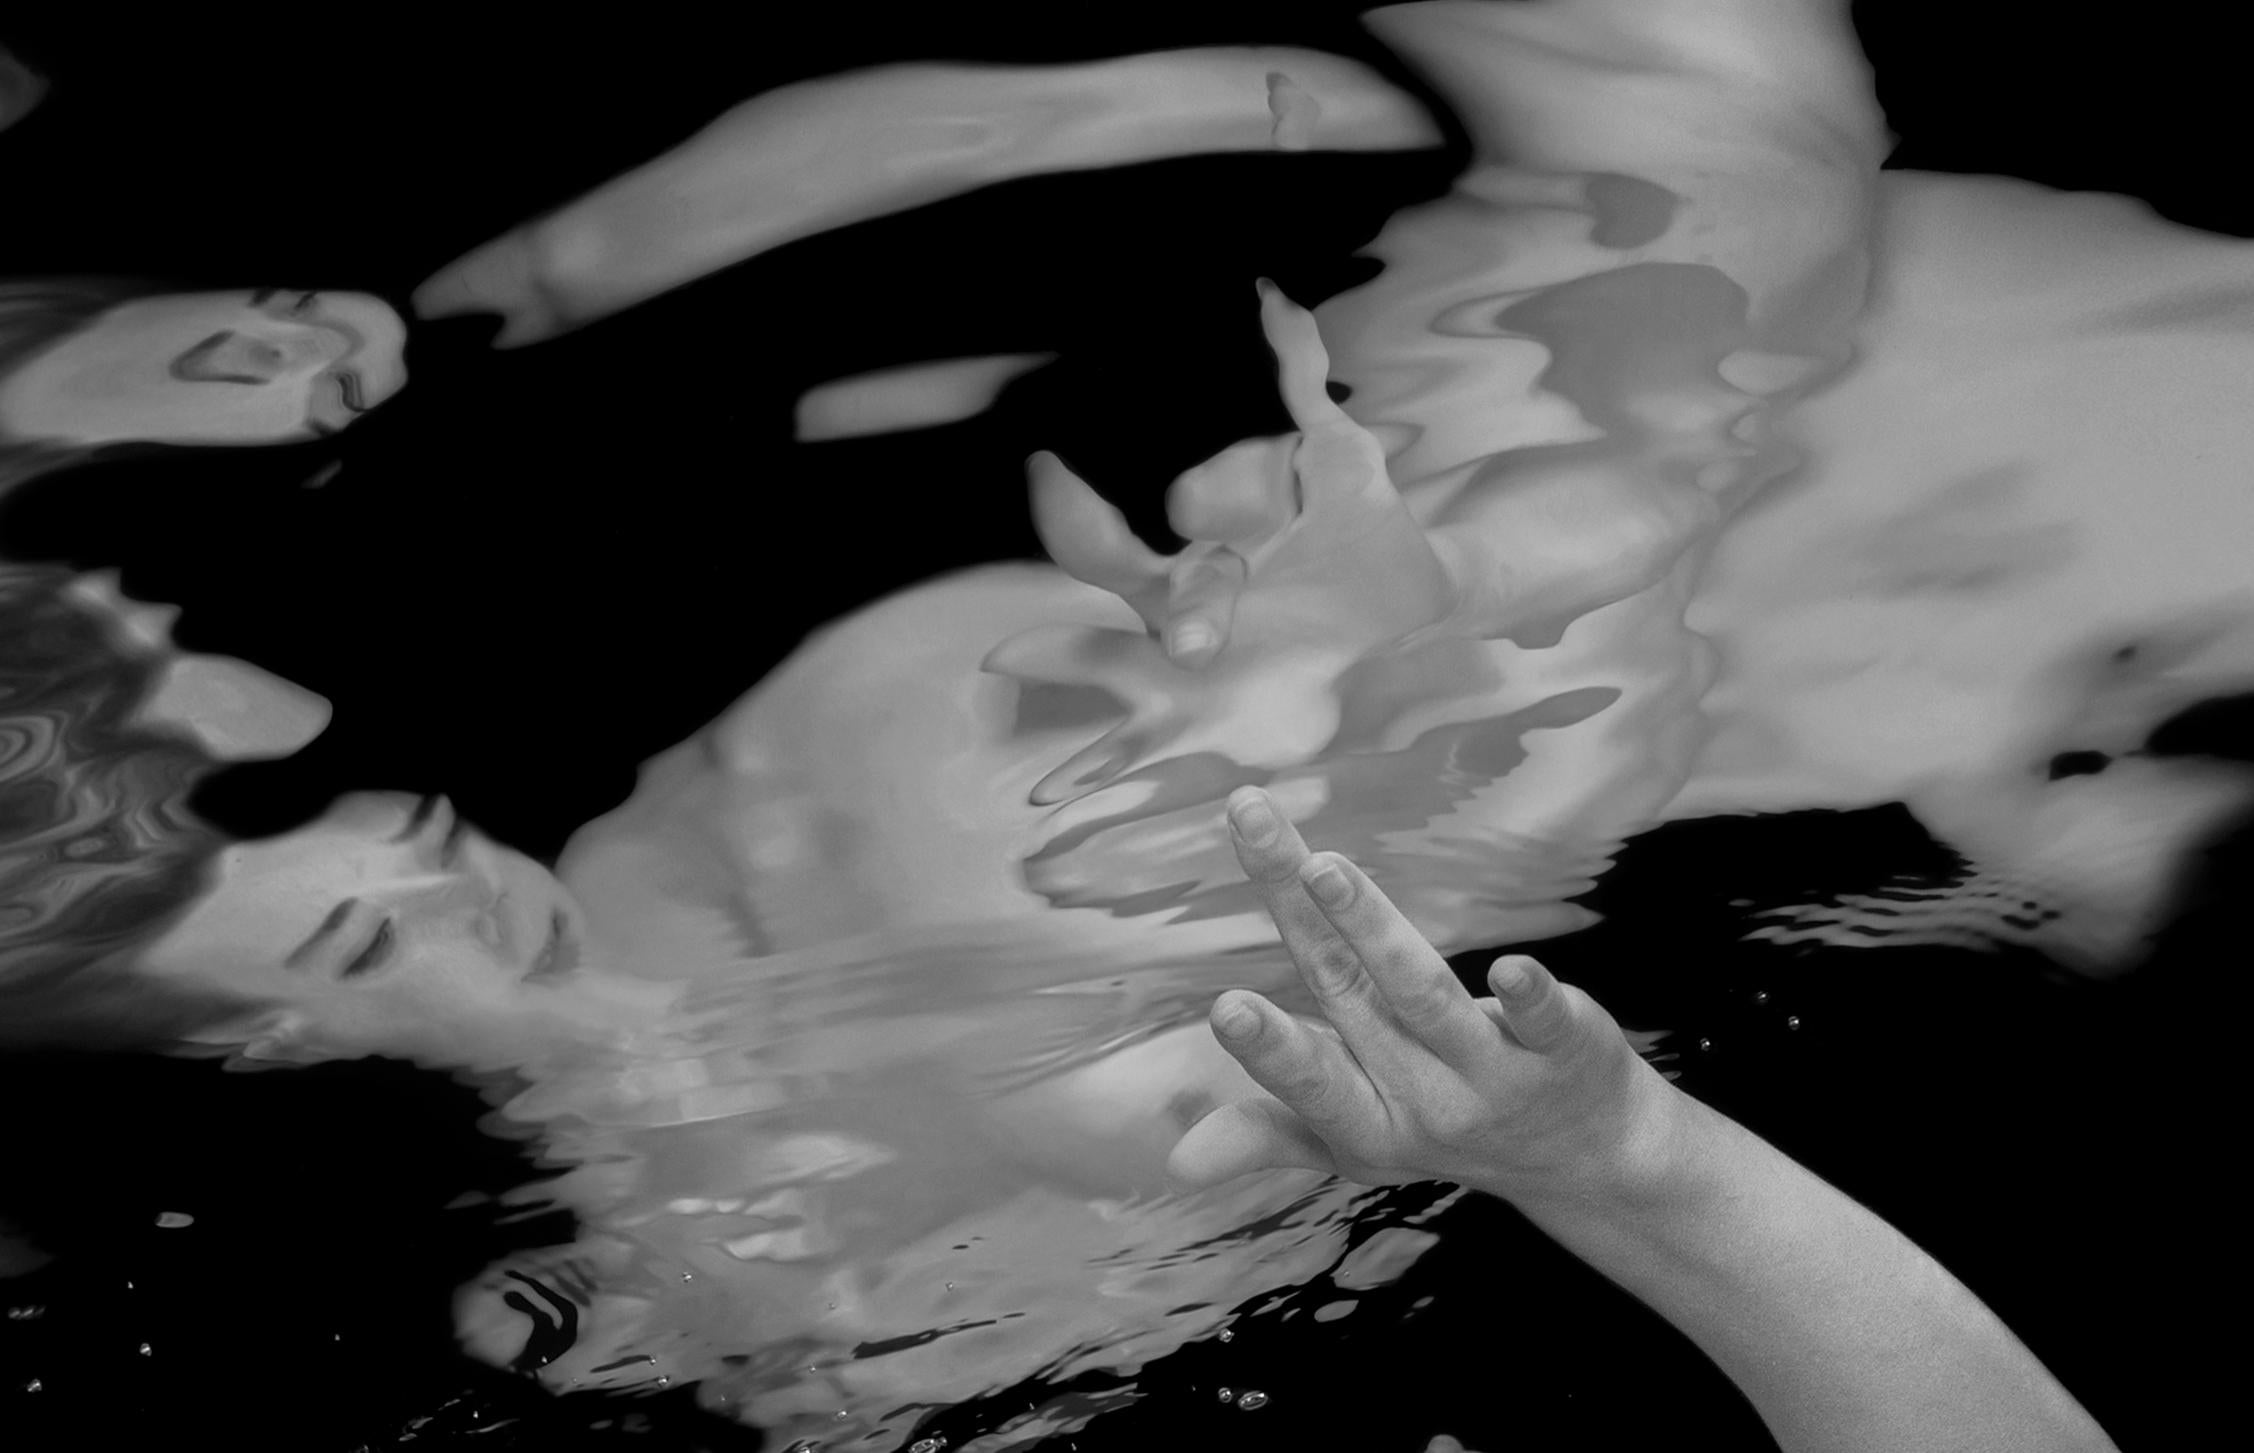 Unterwasser-Schwarz-Weiß-Fotografie einer jungen nackten Frau, die ihr Spiegelbild in der Wasseroberfläche berührt. 

Original-Pigmentdruck in Galeriequalität auf Archivpapier, vom Künstler signiert.
Limitierte Auflage von 24 Stück
Papierformat: